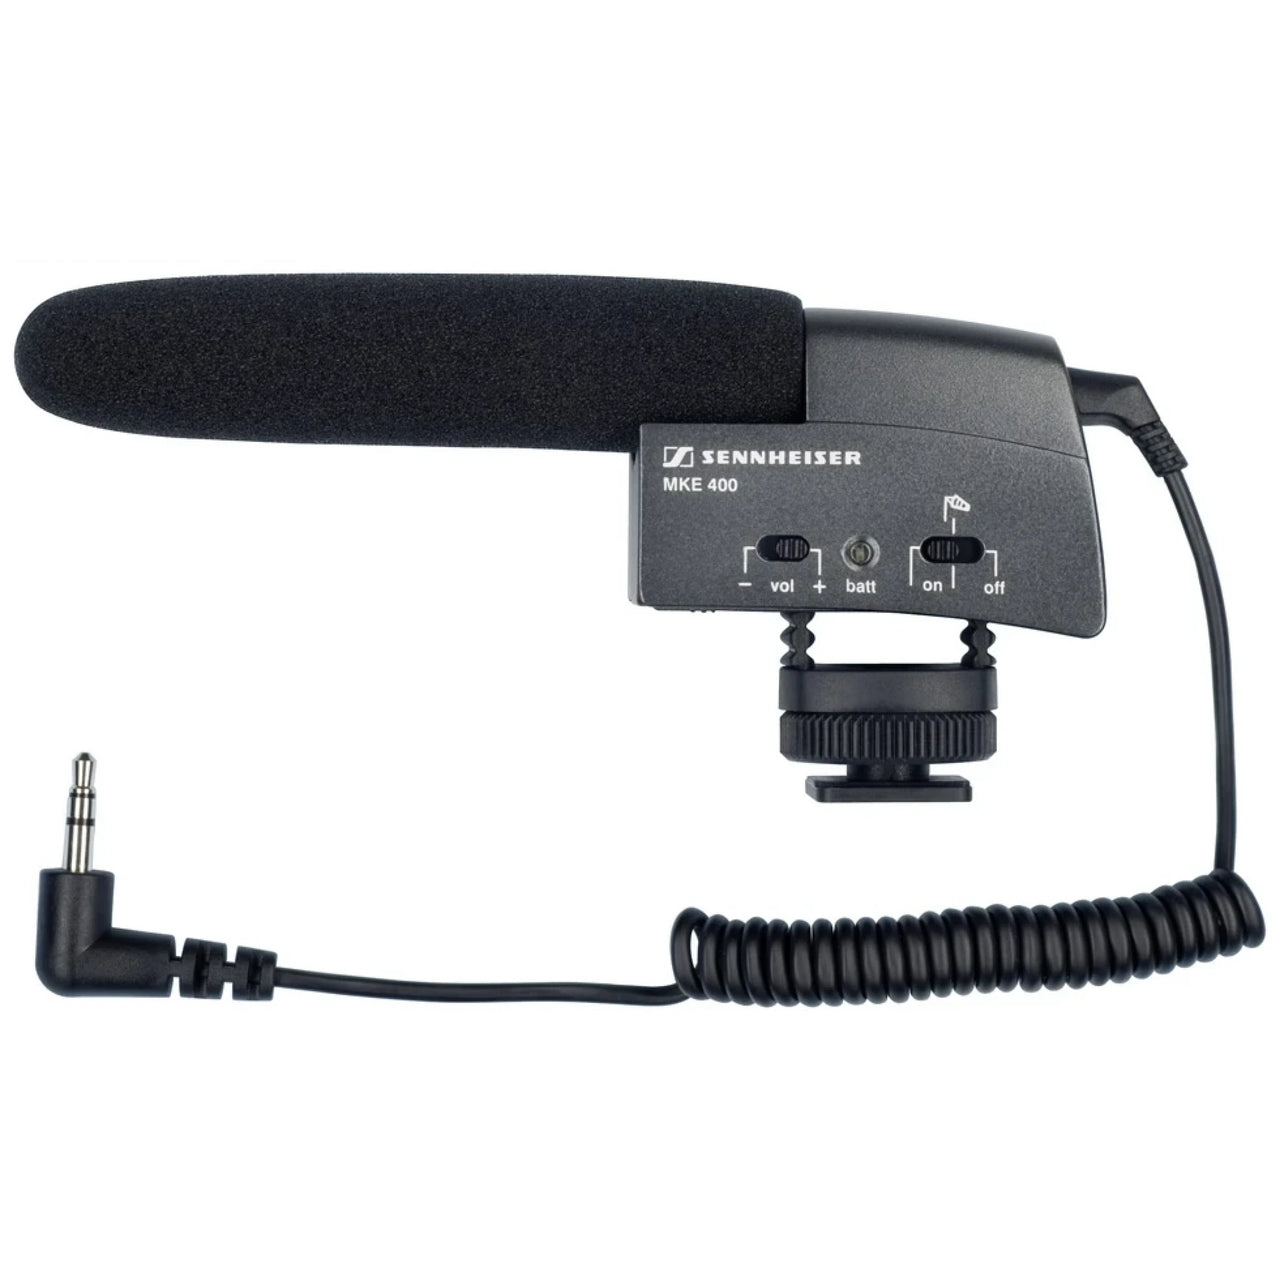 Microfono Sennheiser Direccional Tipo Cañon P/Video Camara, Mke400